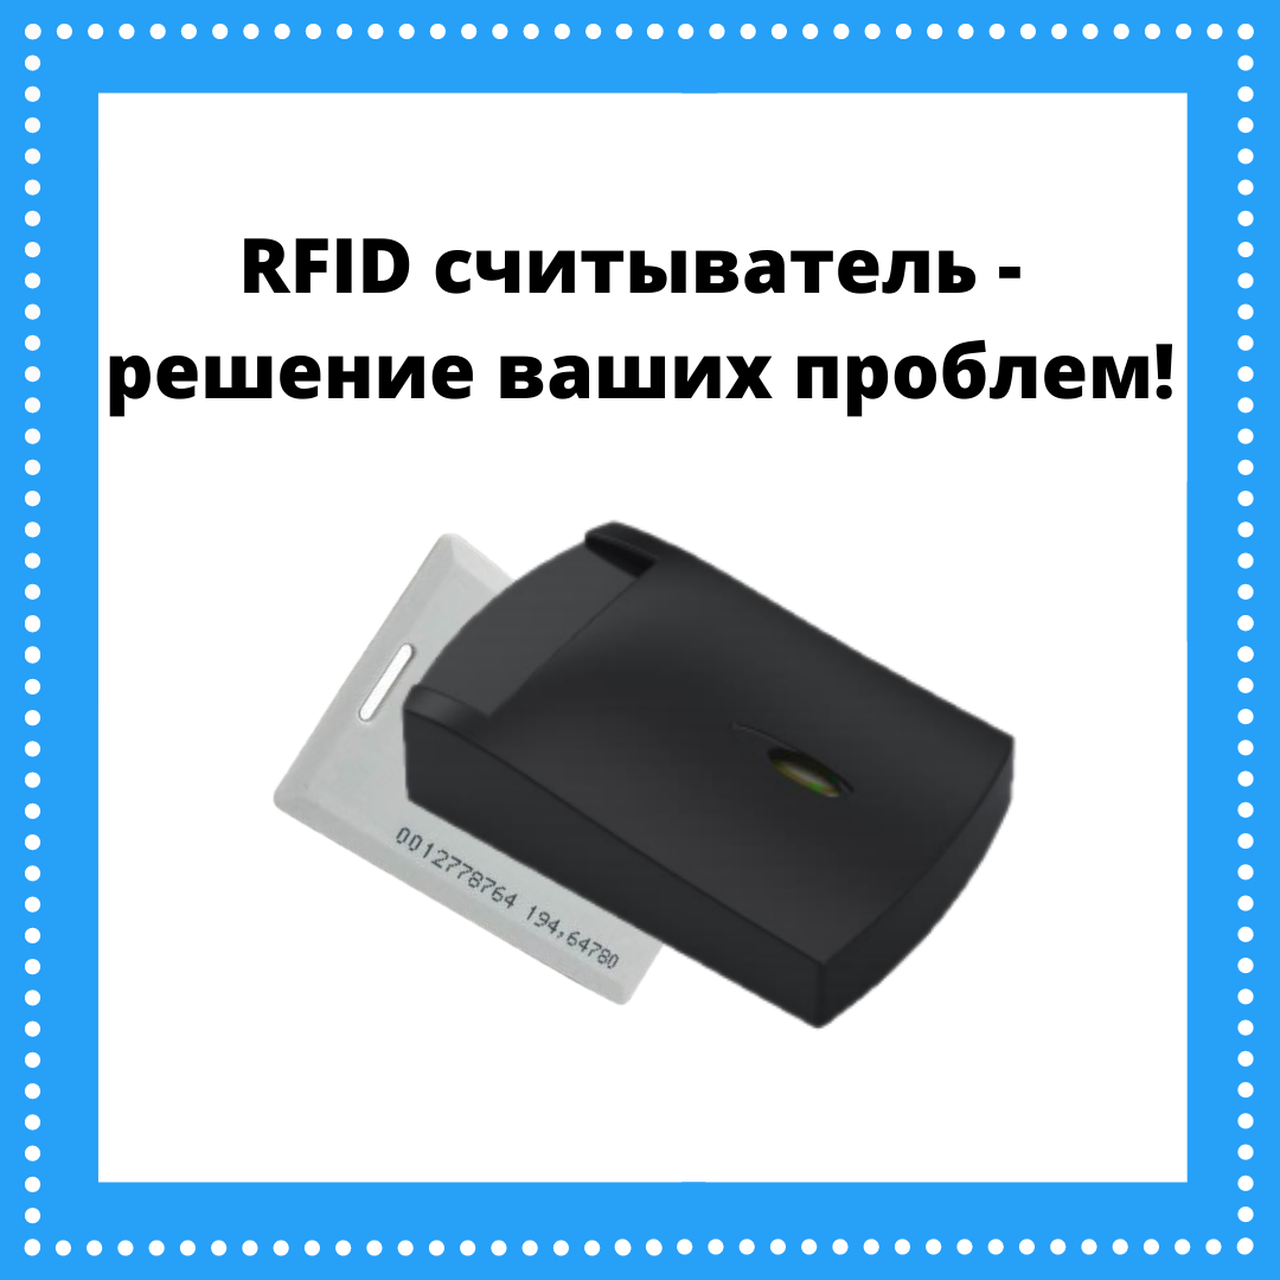 Установка RFID считывателей главная картинка